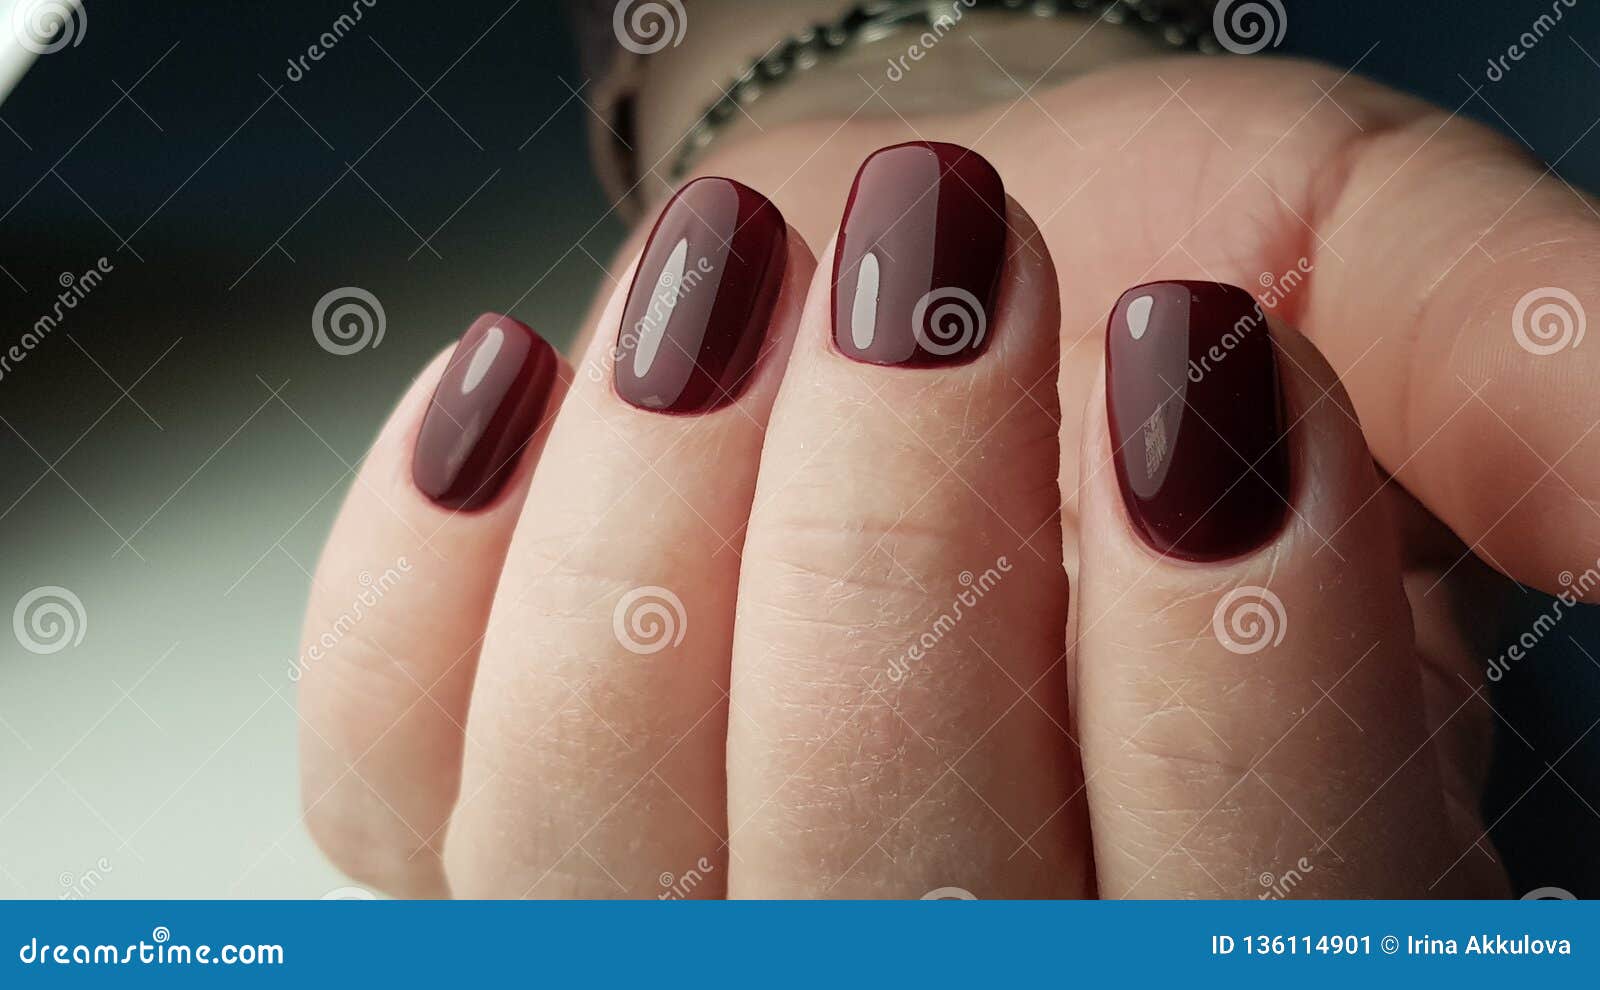 Shiny Nails Stock Image Image Of Oval Manicure Polish 136114901